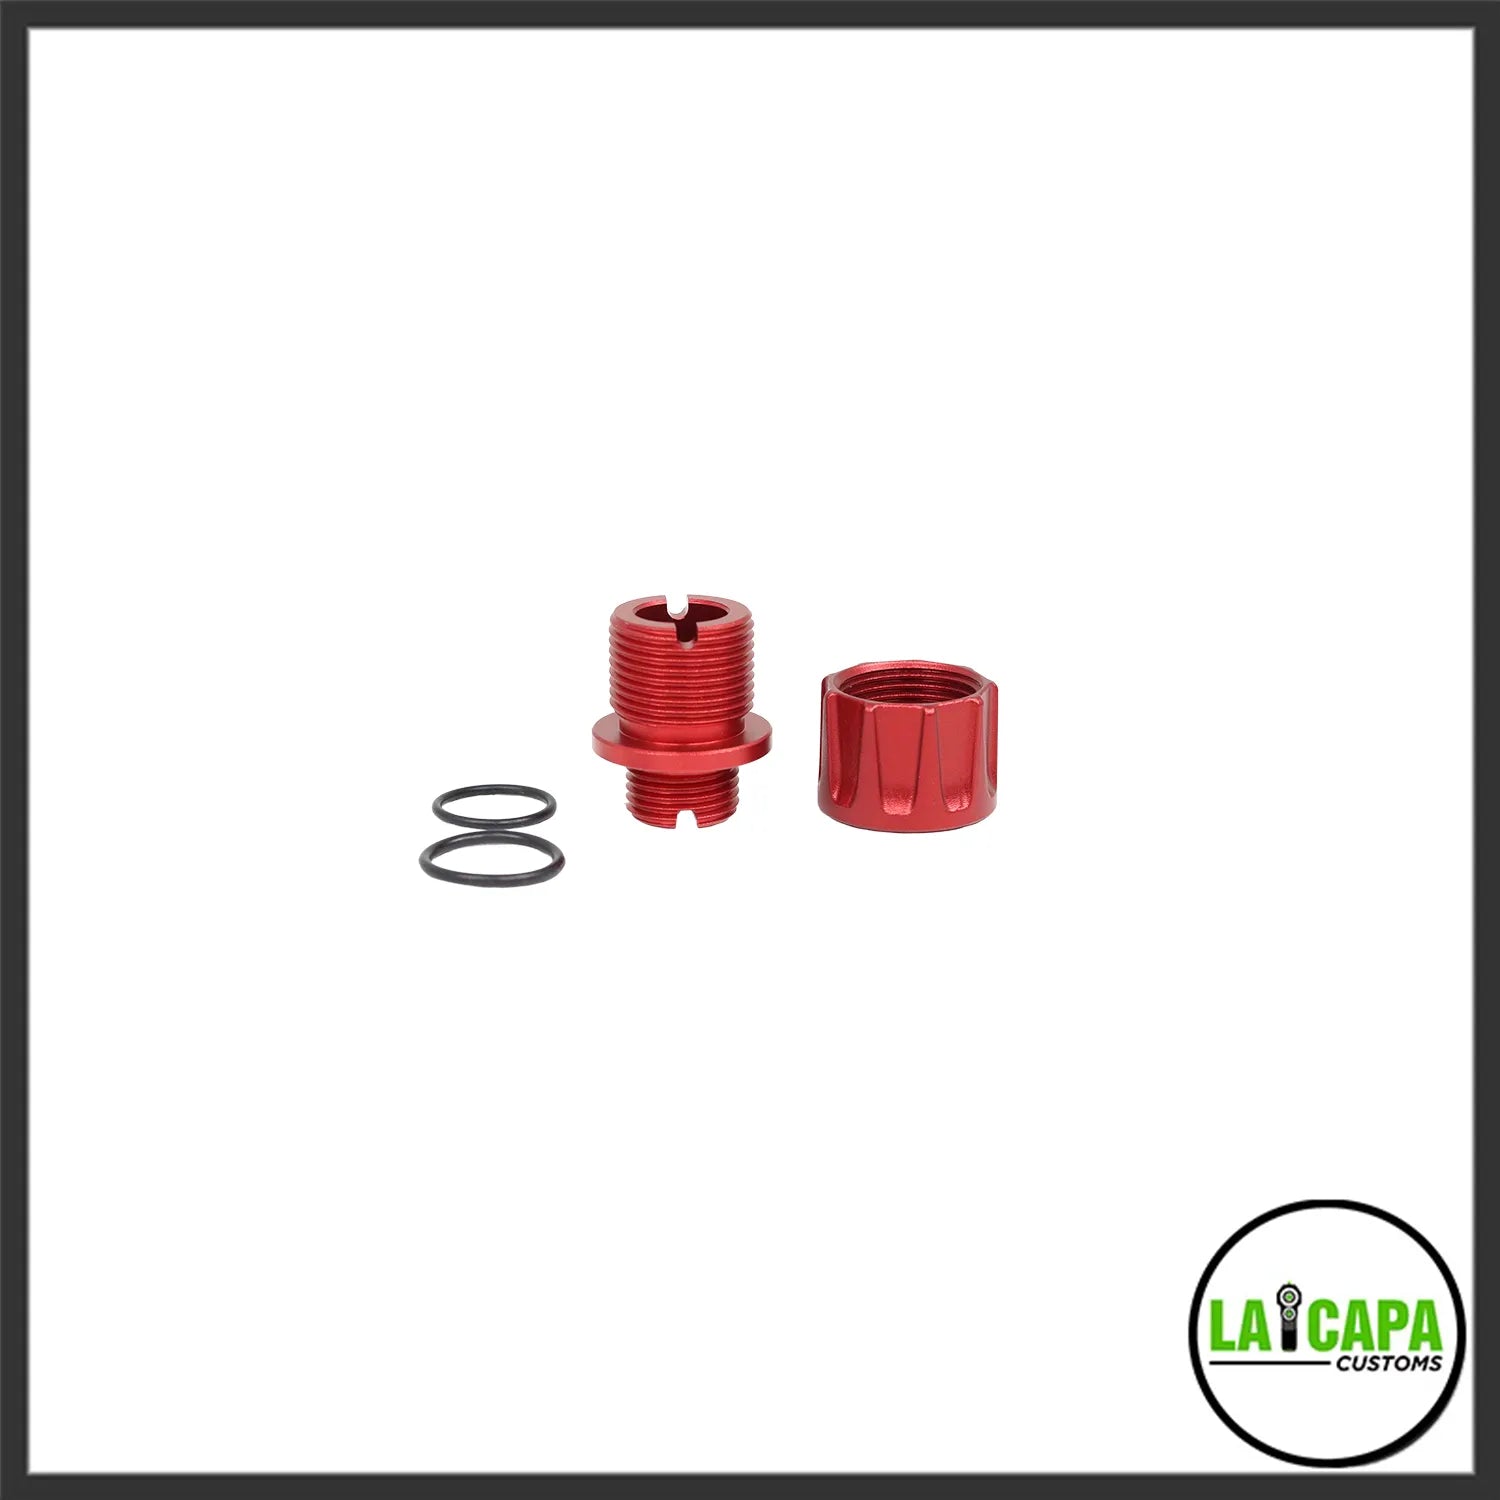 LA Capa Customs “S1” Reversible Thread Adapter for Hi Capa - Red